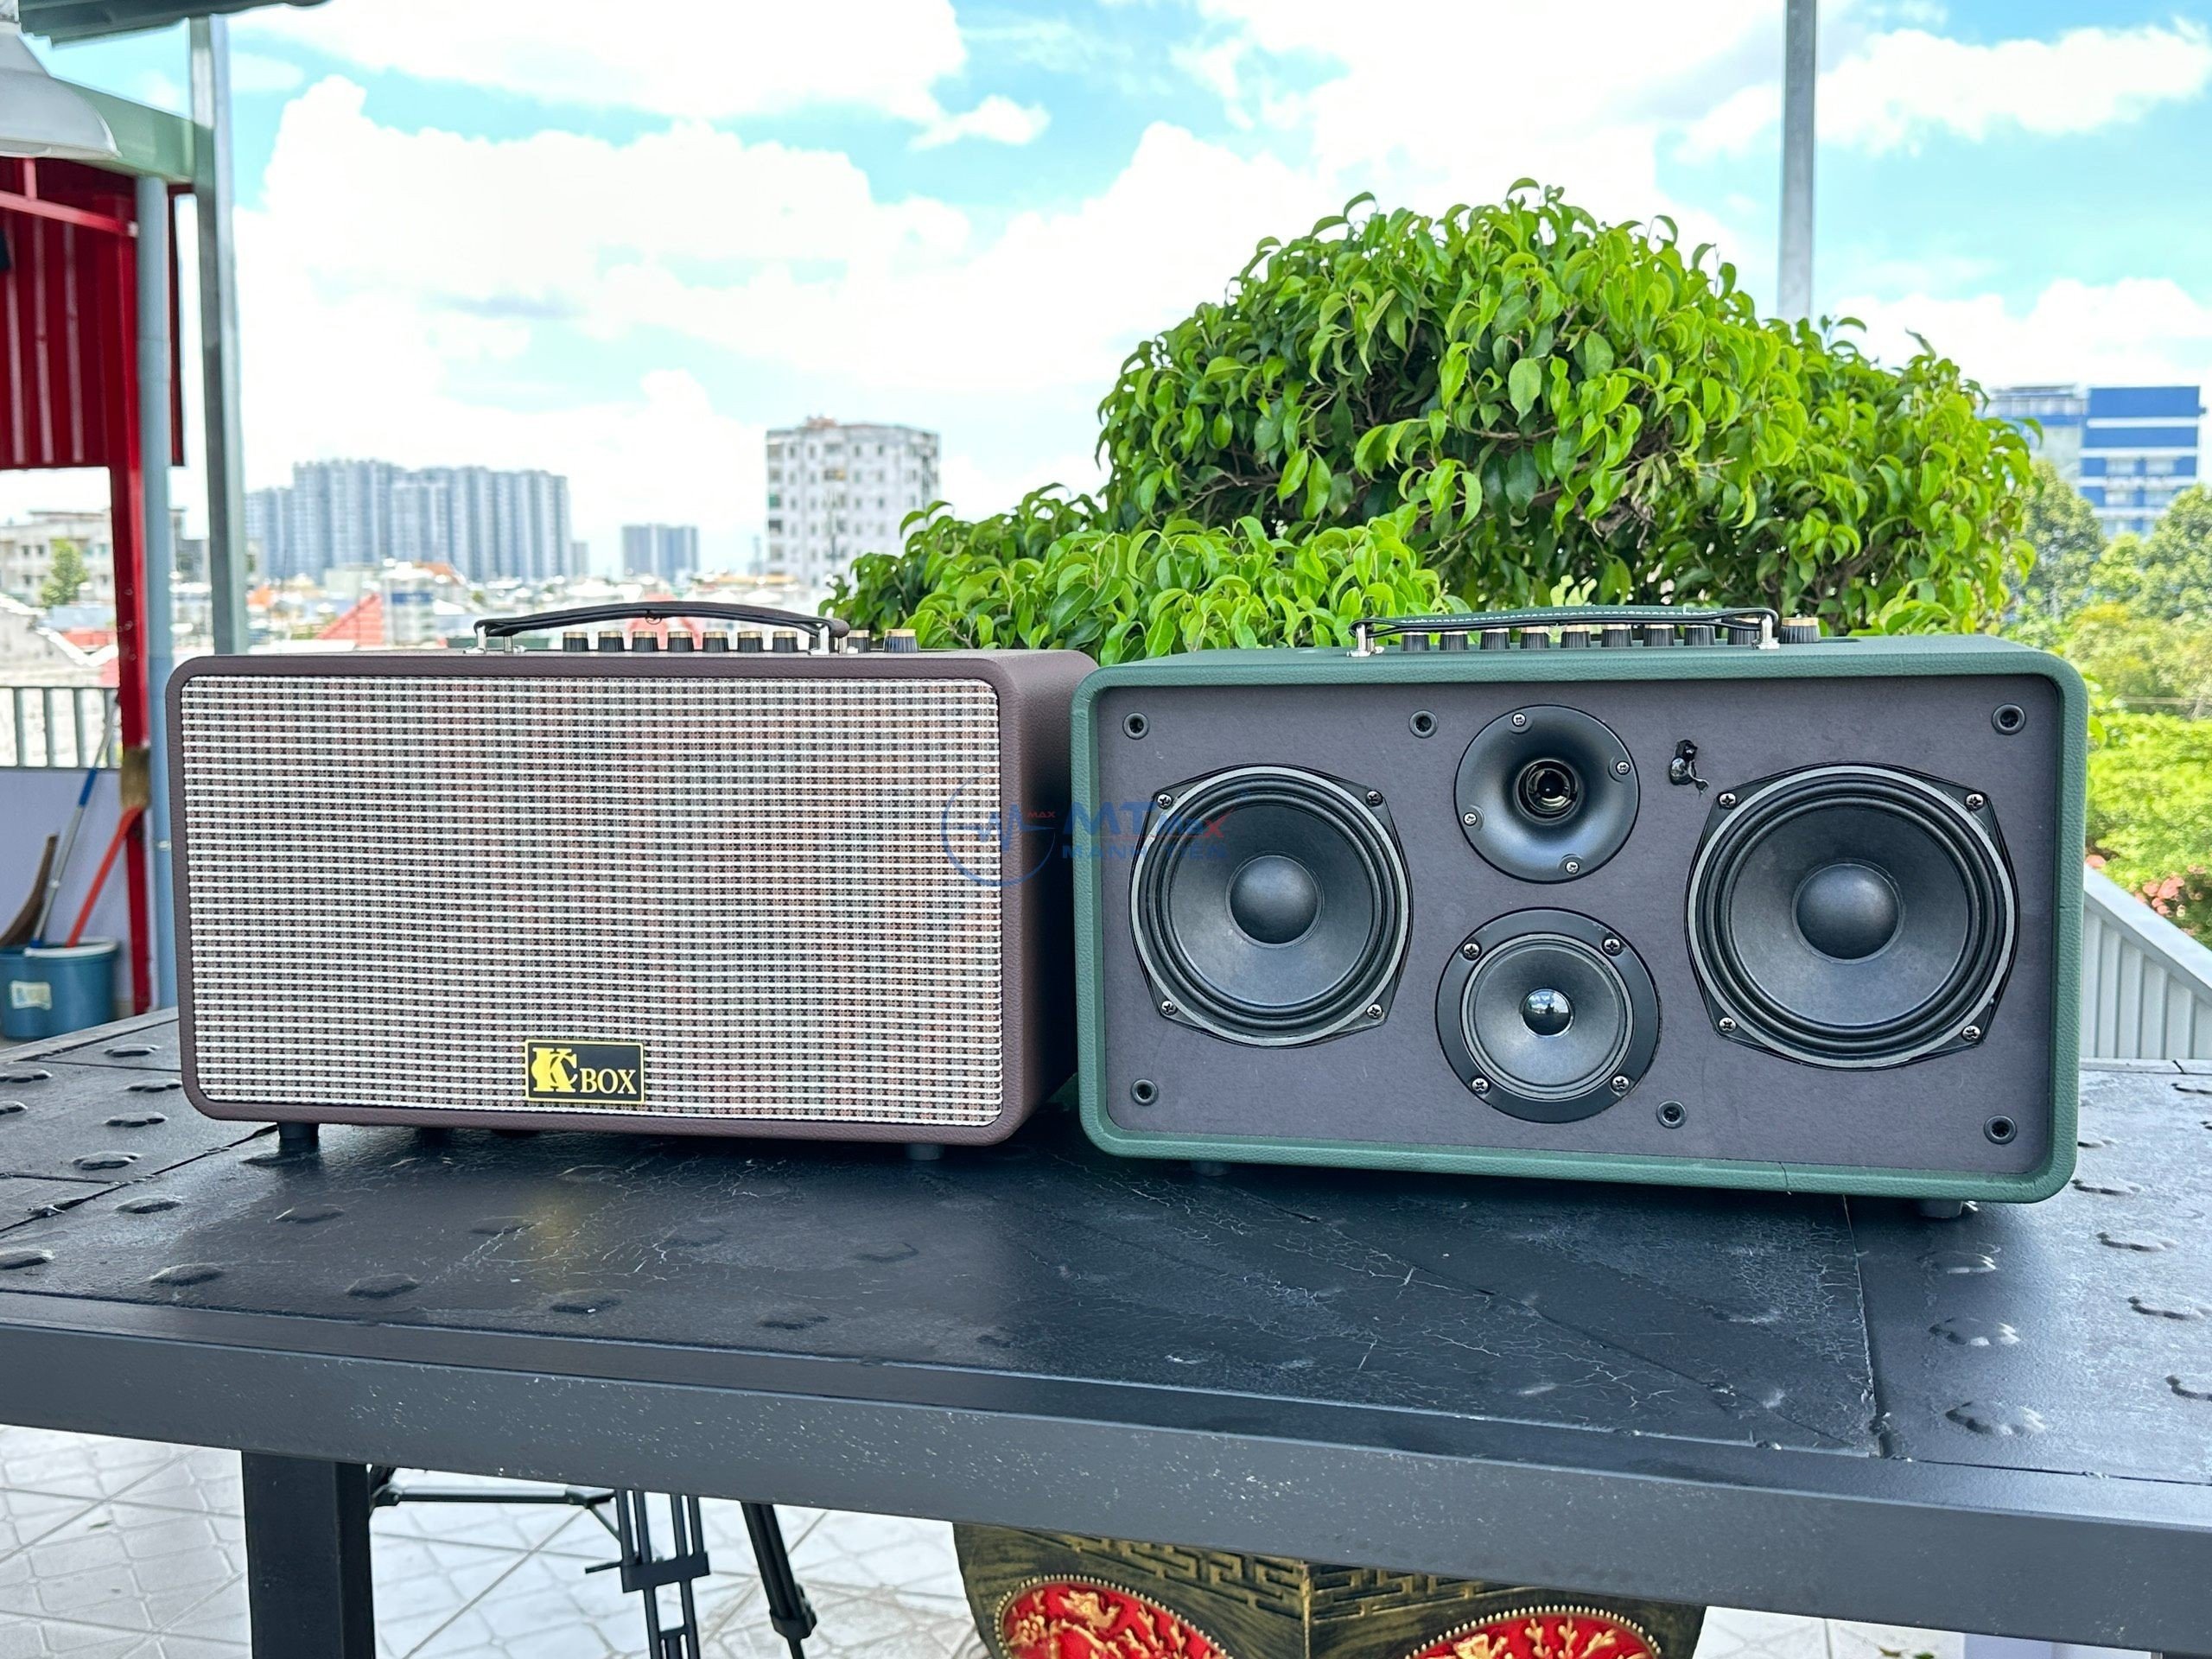 KCBox KC260Pro - Loa Xách Tay Karaoke Cao Cấp Giá Tốt Nhất 2023, Bass Boost, Bluetooth 6.0, Tặng Kèm Micro Không Dây Hàng chính hãng